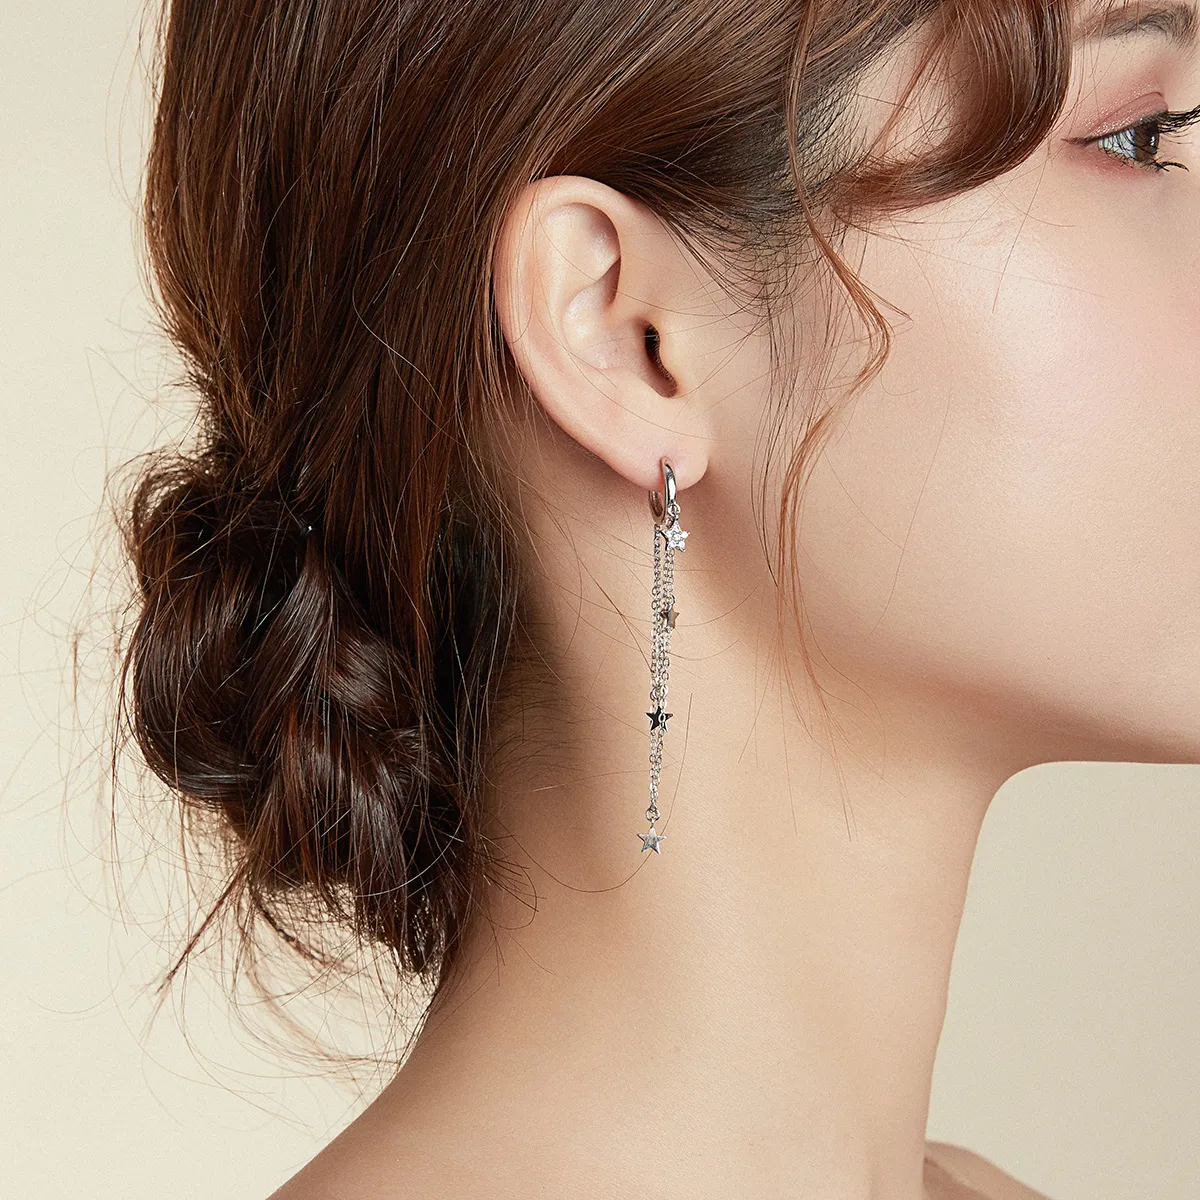 Pandora Style Silver Elegant Star Moon Dangle Earrings - SCE982